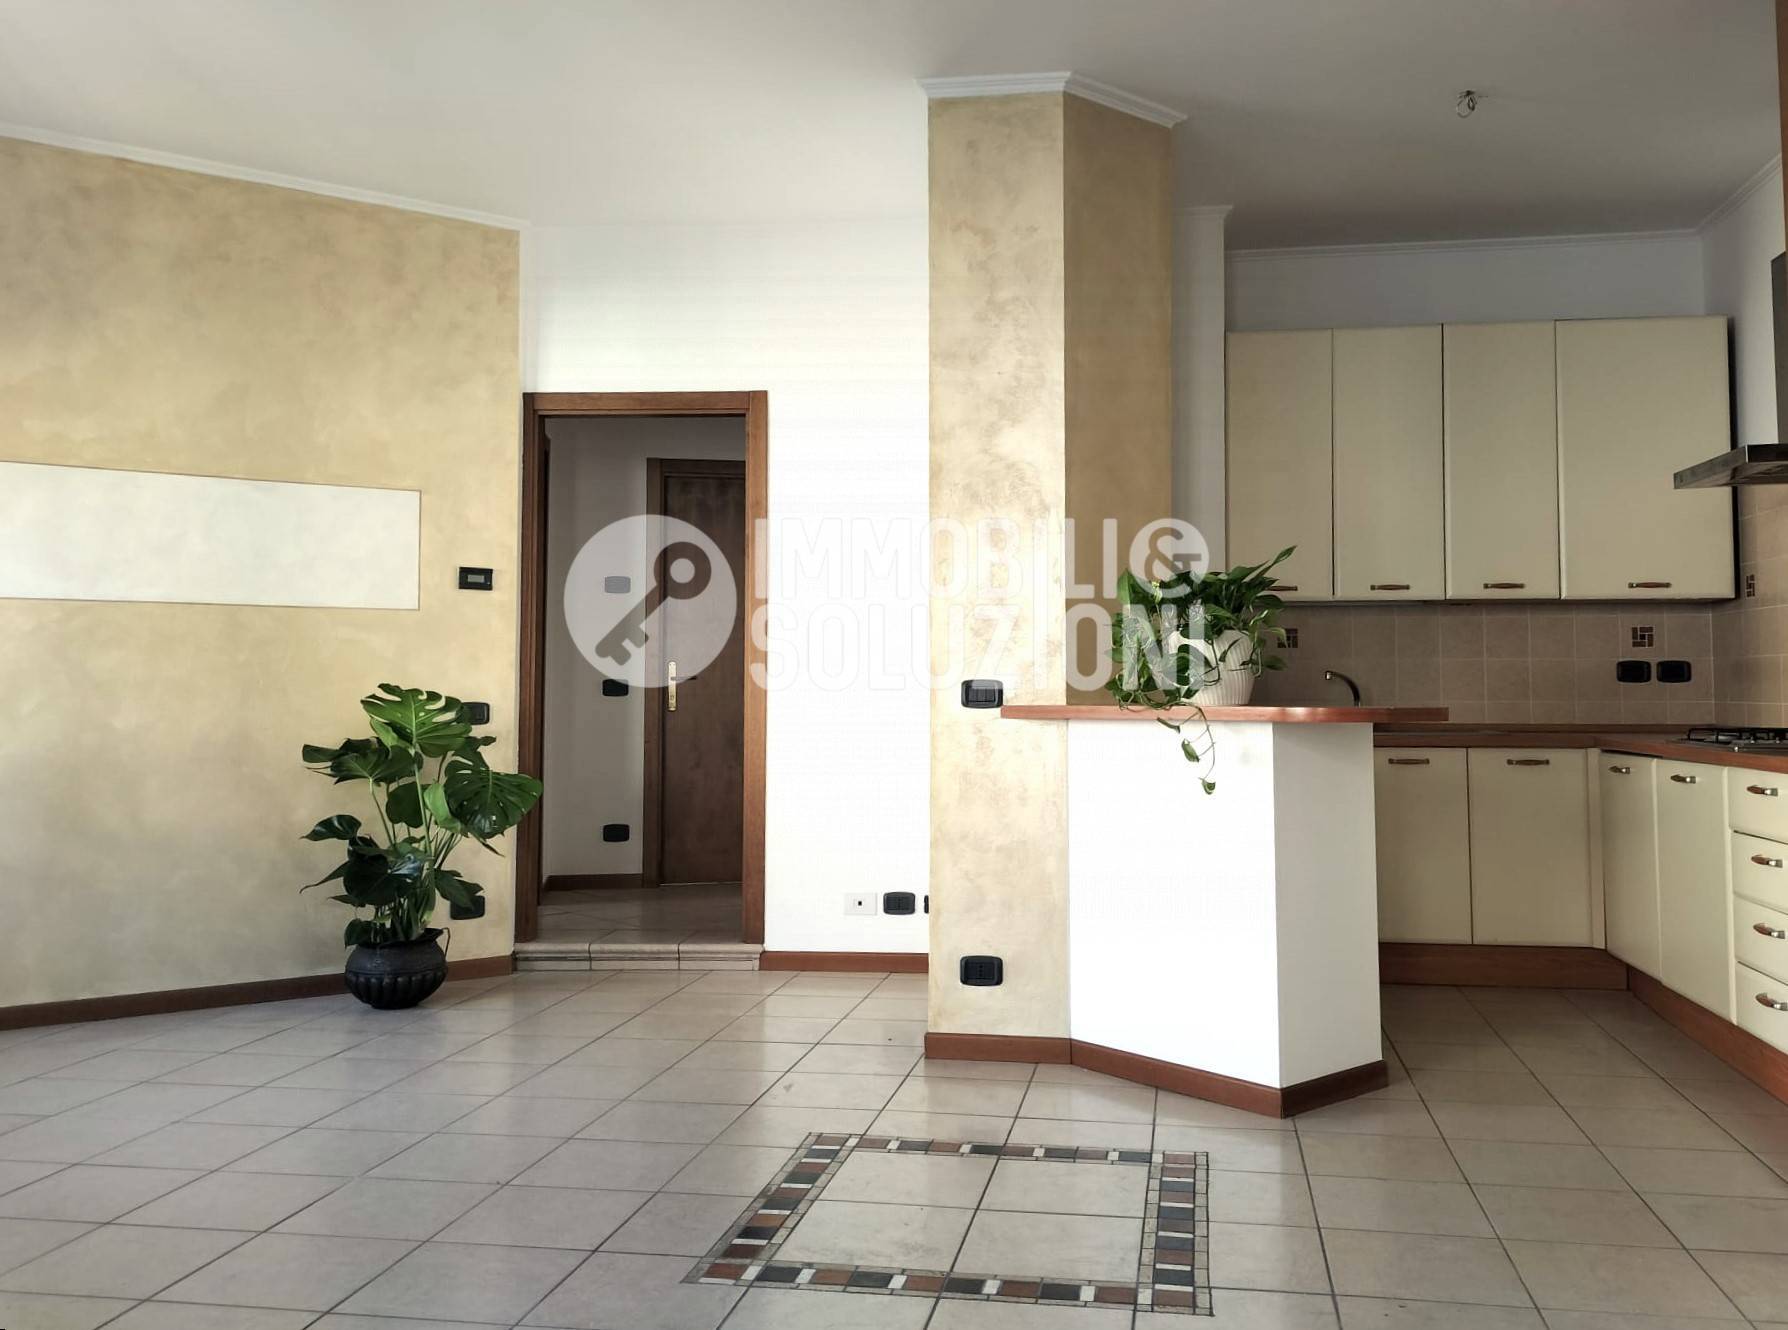 Appartamento in vendita a Gandino, 3 locali, prezzo € 60.000 | PortaleAgenzieImmobiliari.it